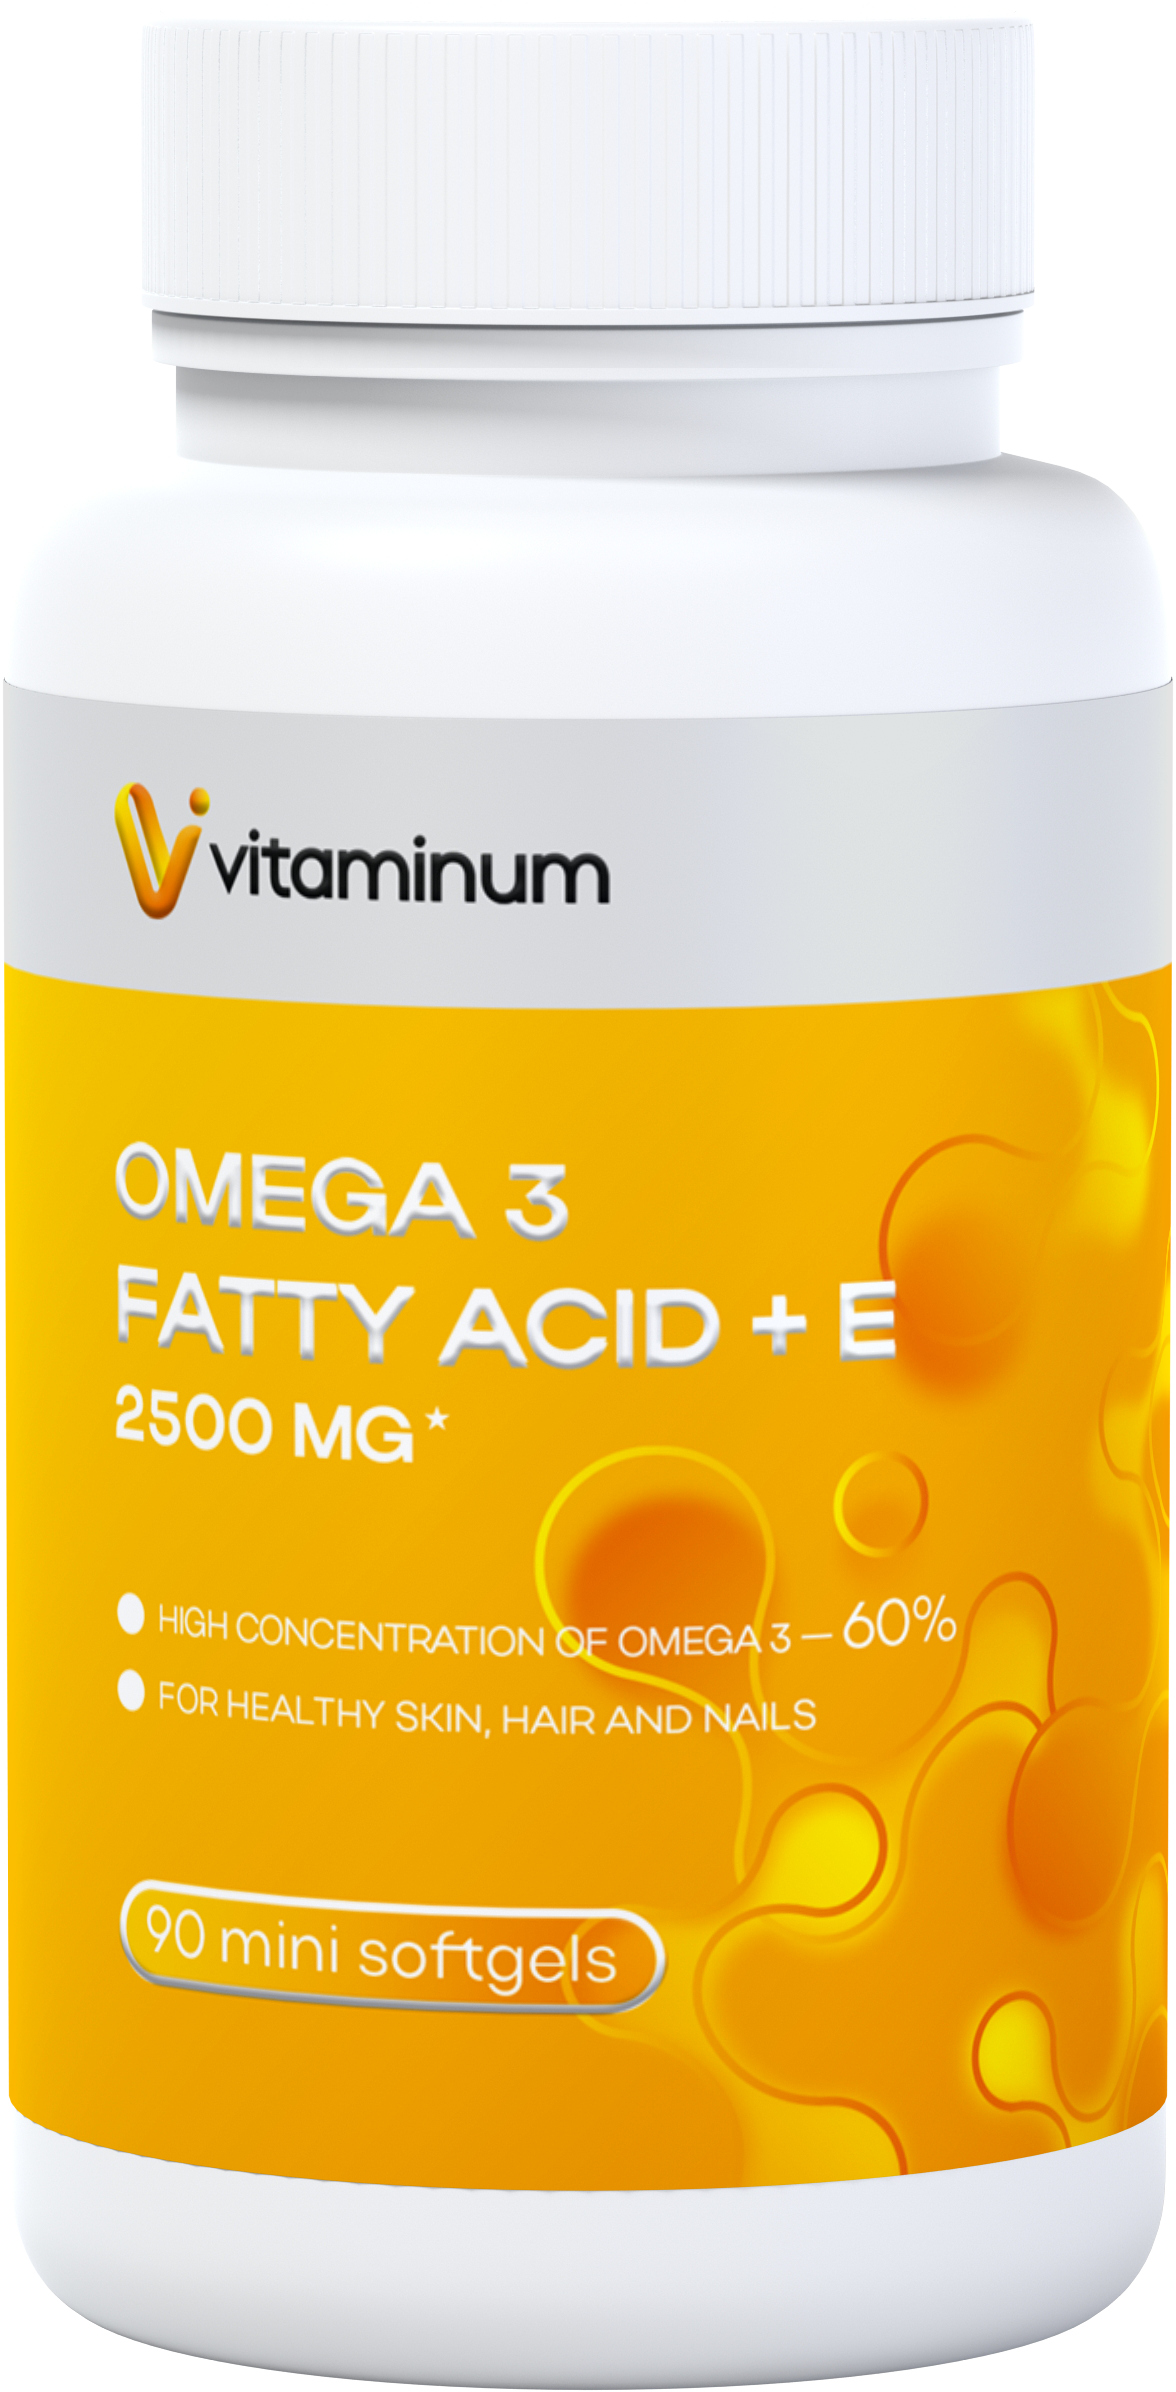  Vitaminum ОМЕГА 3 60% + витамин Е (2500 MG*) 90 капсул 700 мг   в Армавире